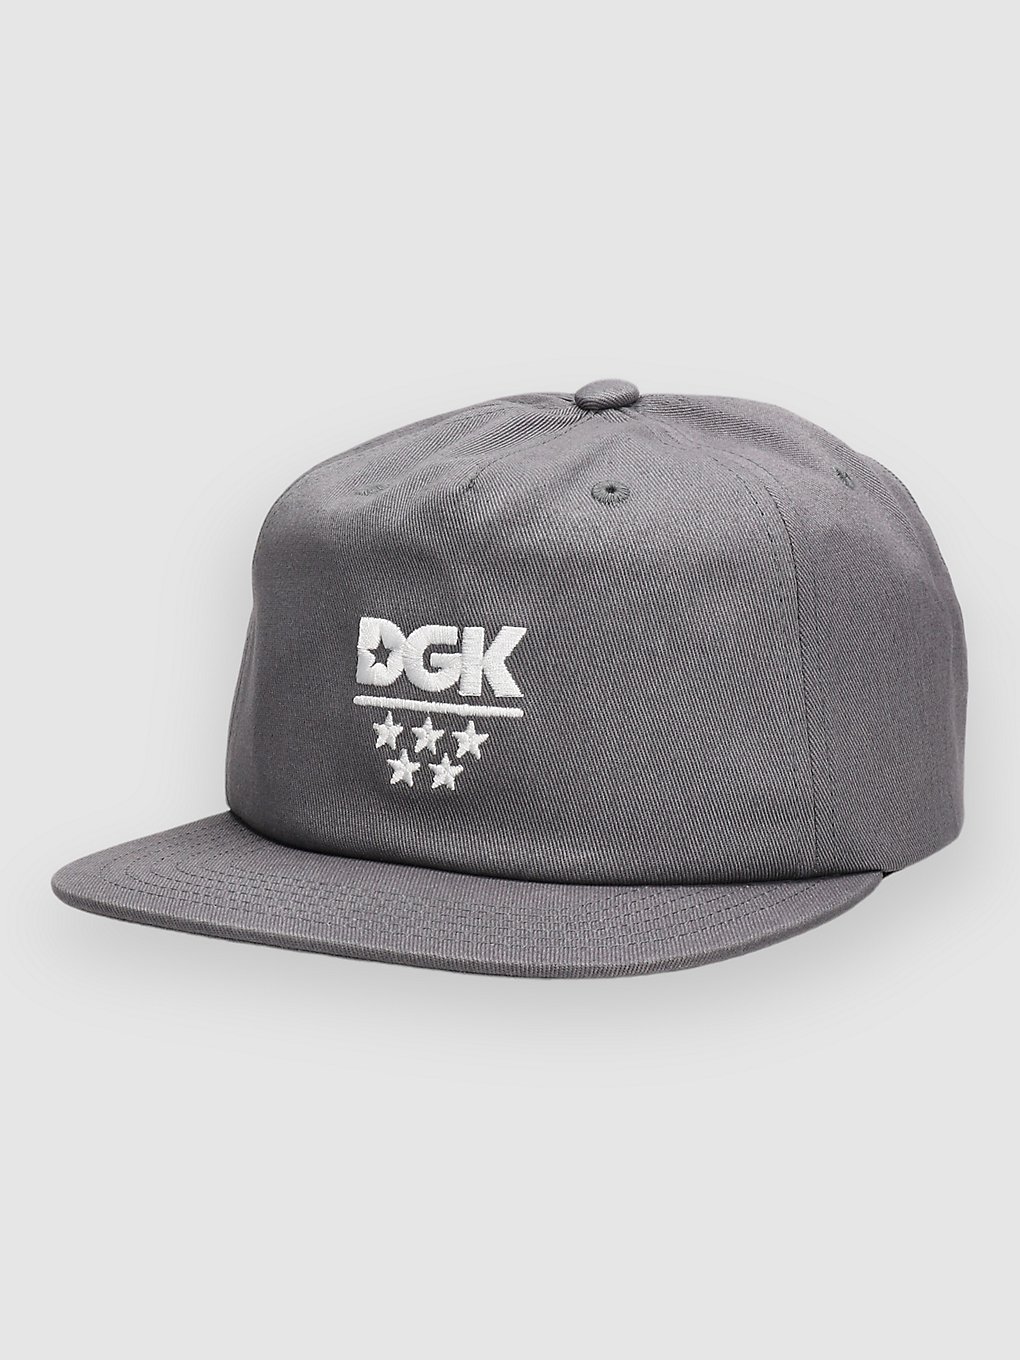 DGK Allstar Strapback Cap gray kaufen